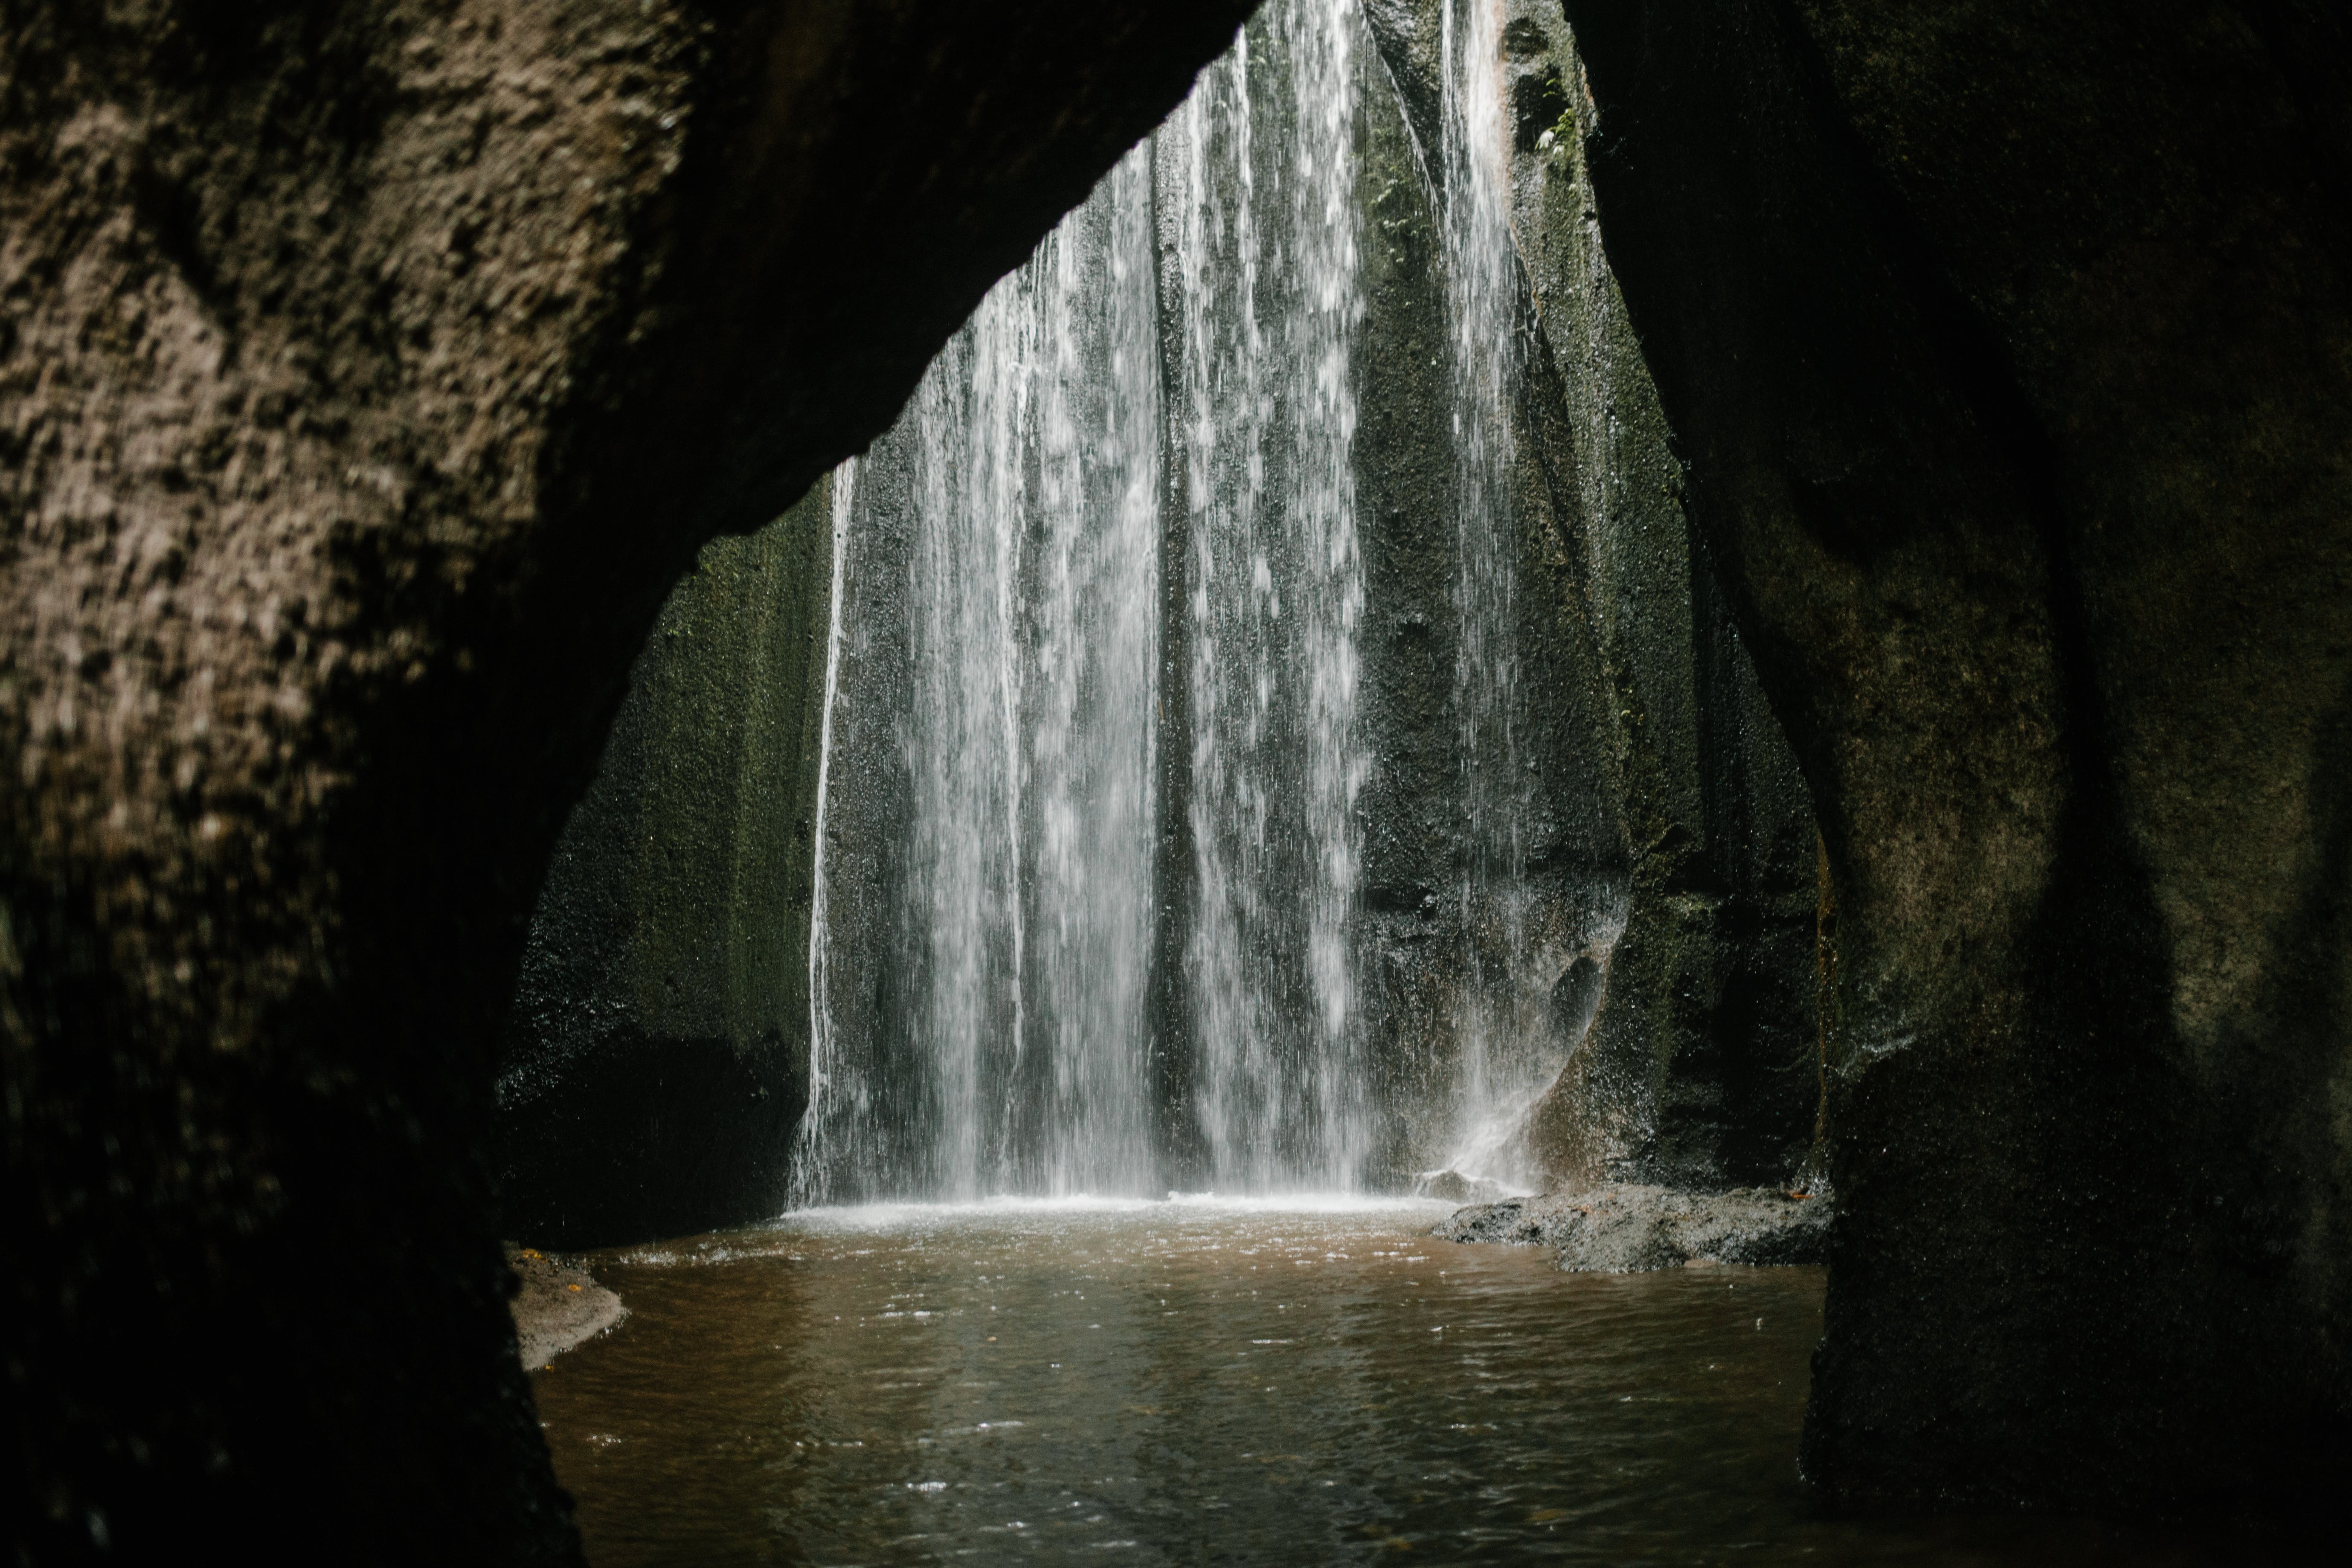 Waterfall flowing in rocky ravine